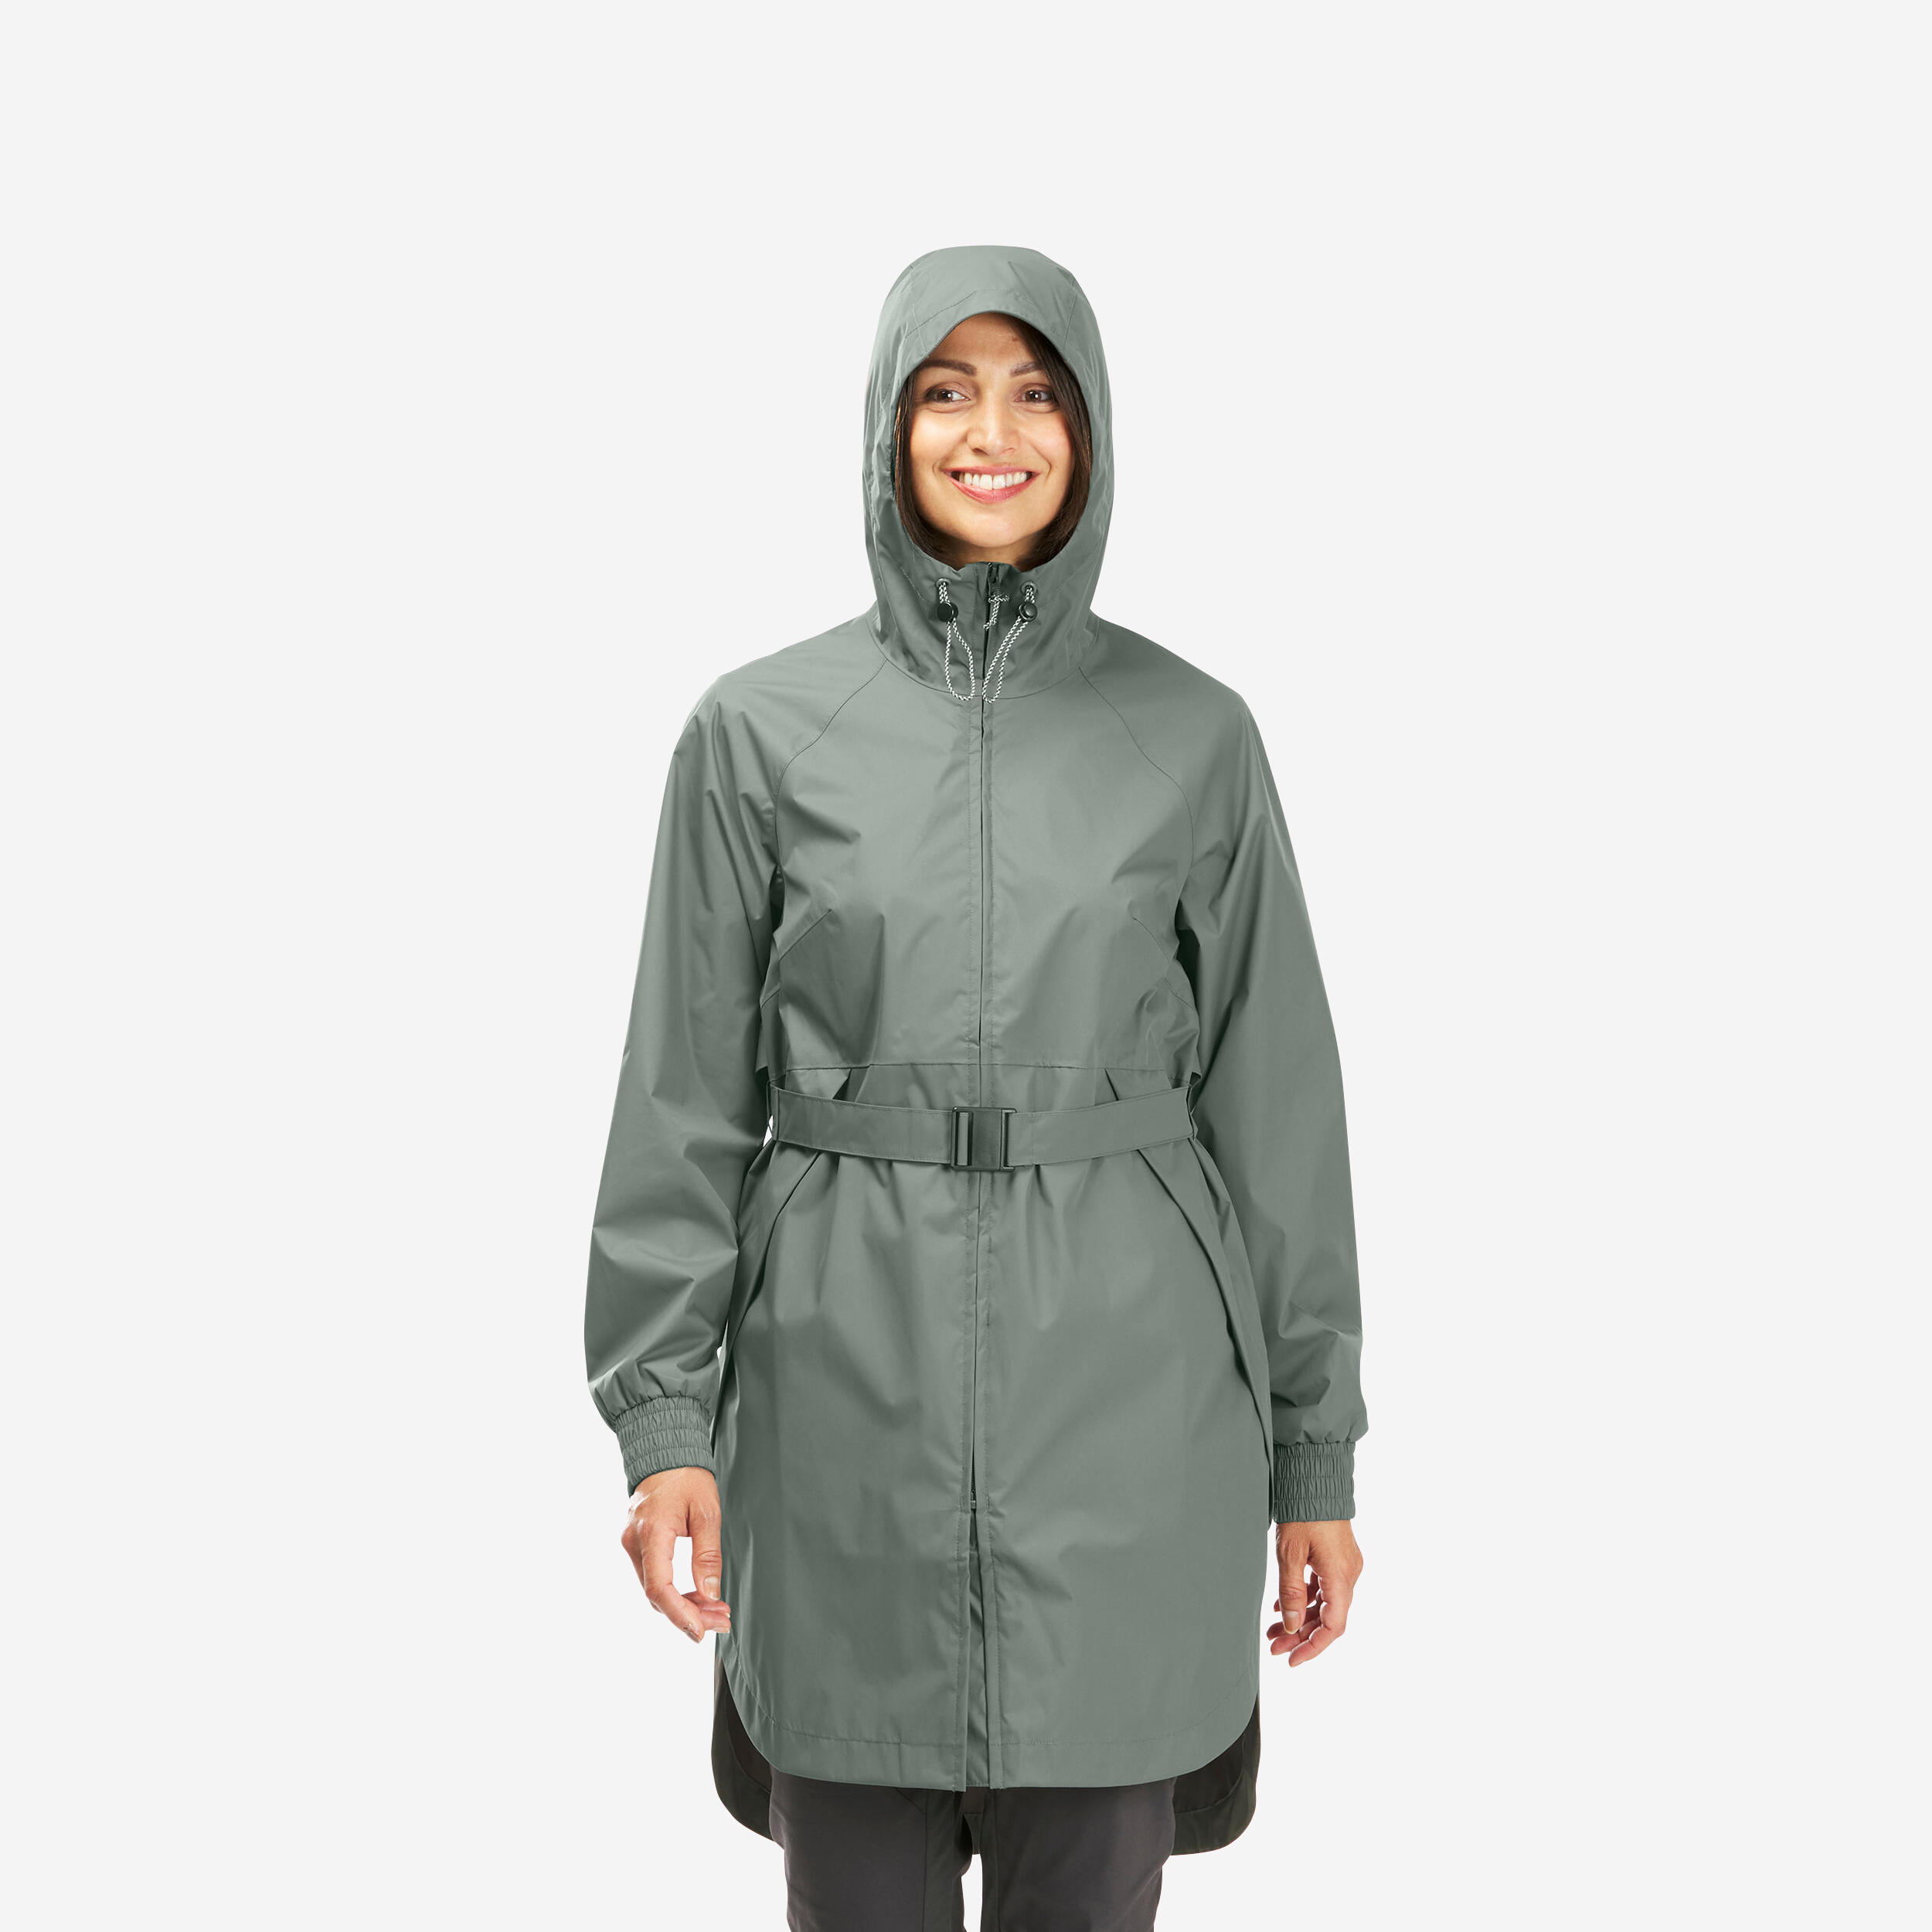 Women's Waterproof Rain Jacket - NH 550 - Yellow ochre, Linen